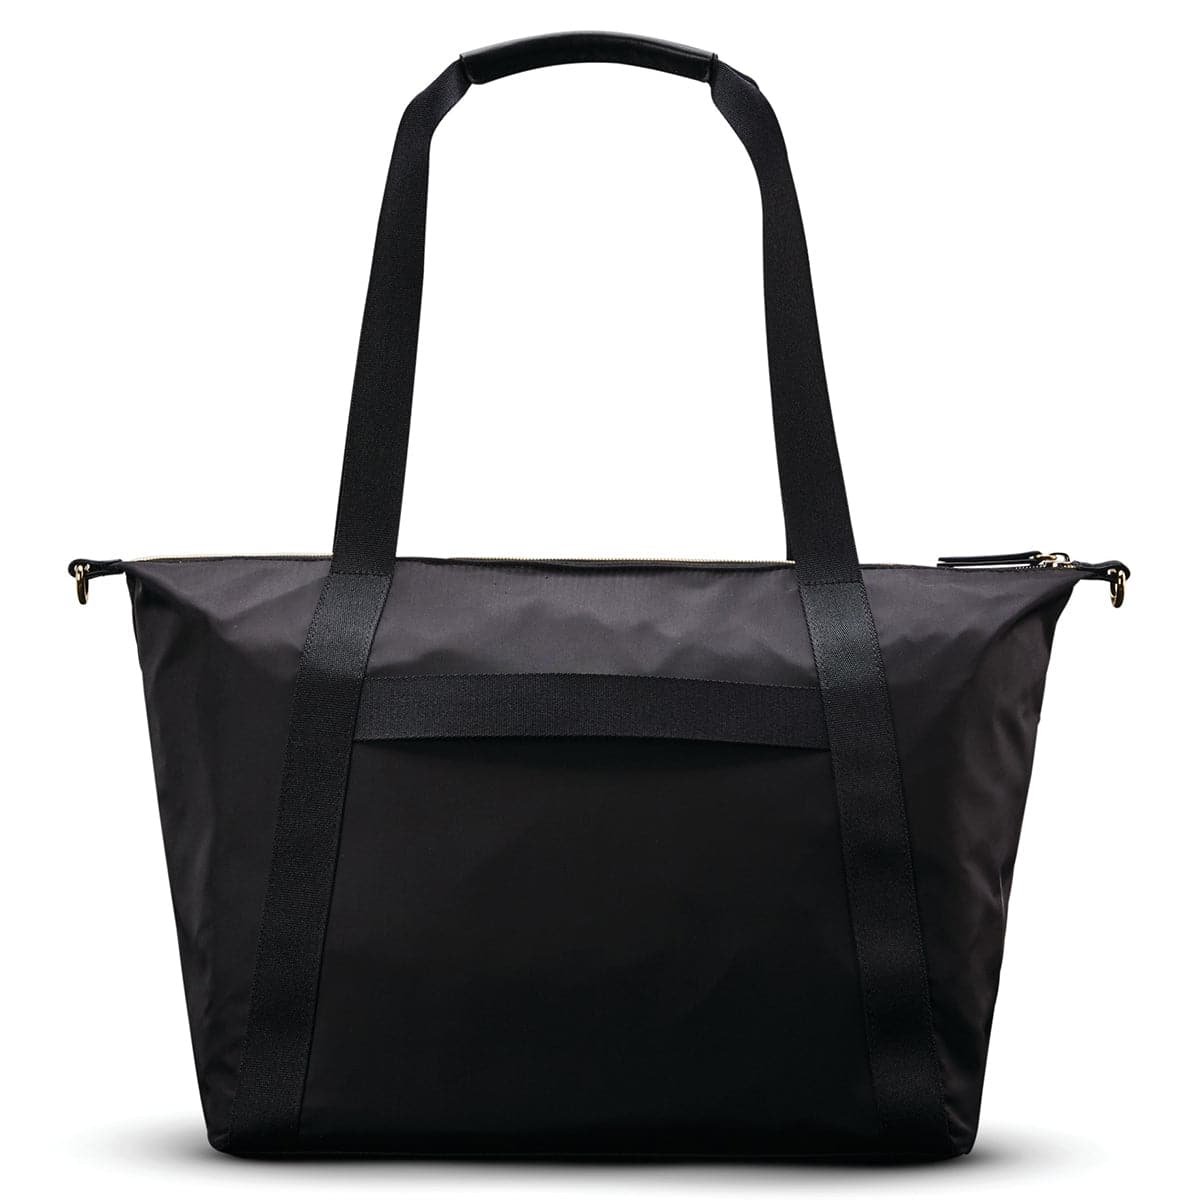 Samsonite Mobile Solution Classic Convertible Carryall Bag